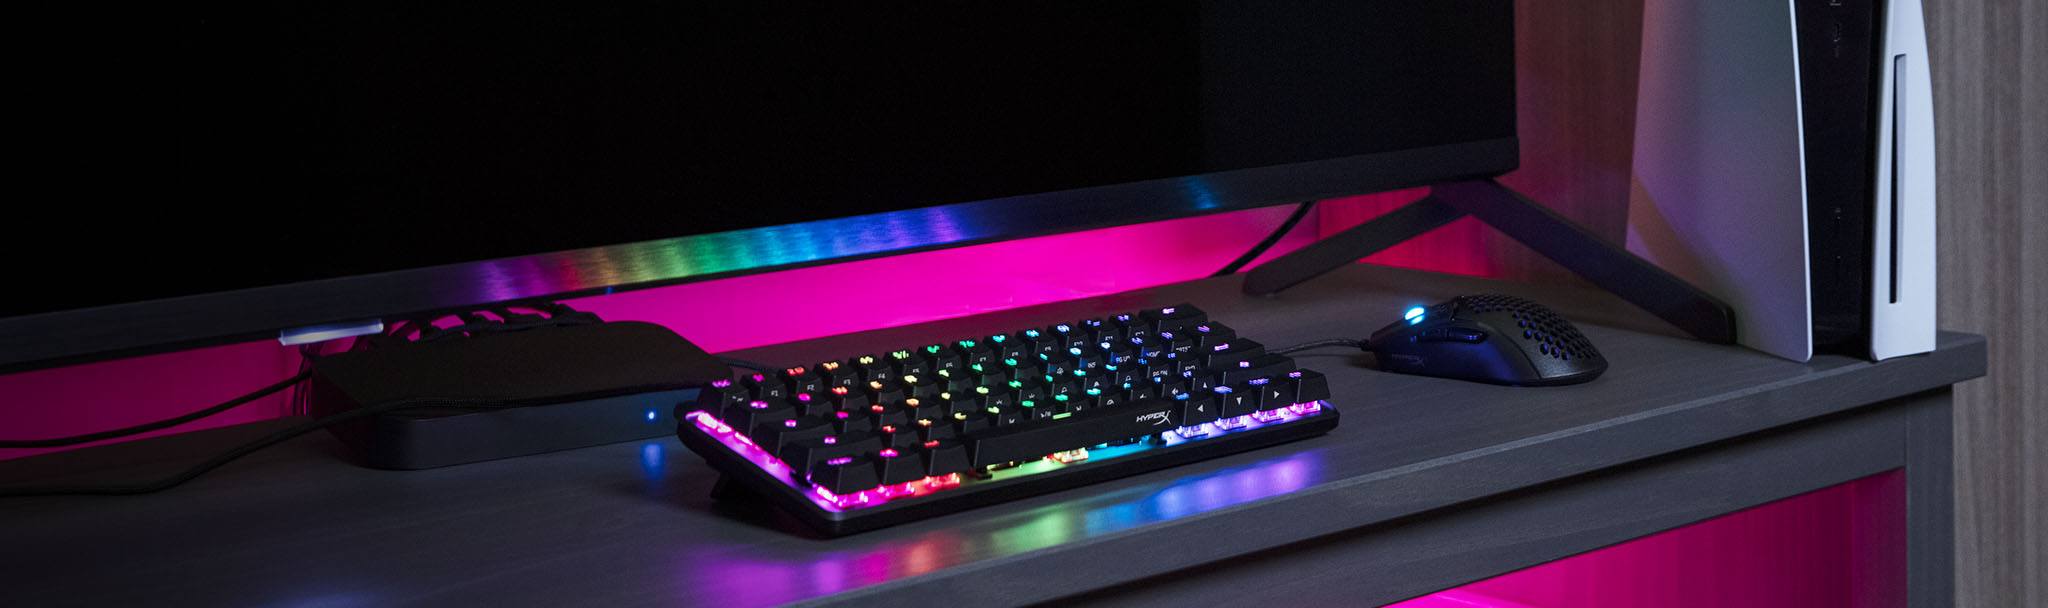 HyperX Alloy Origins 60 - Клавиши с RGB-подсветкой и яркими световыми эффектами